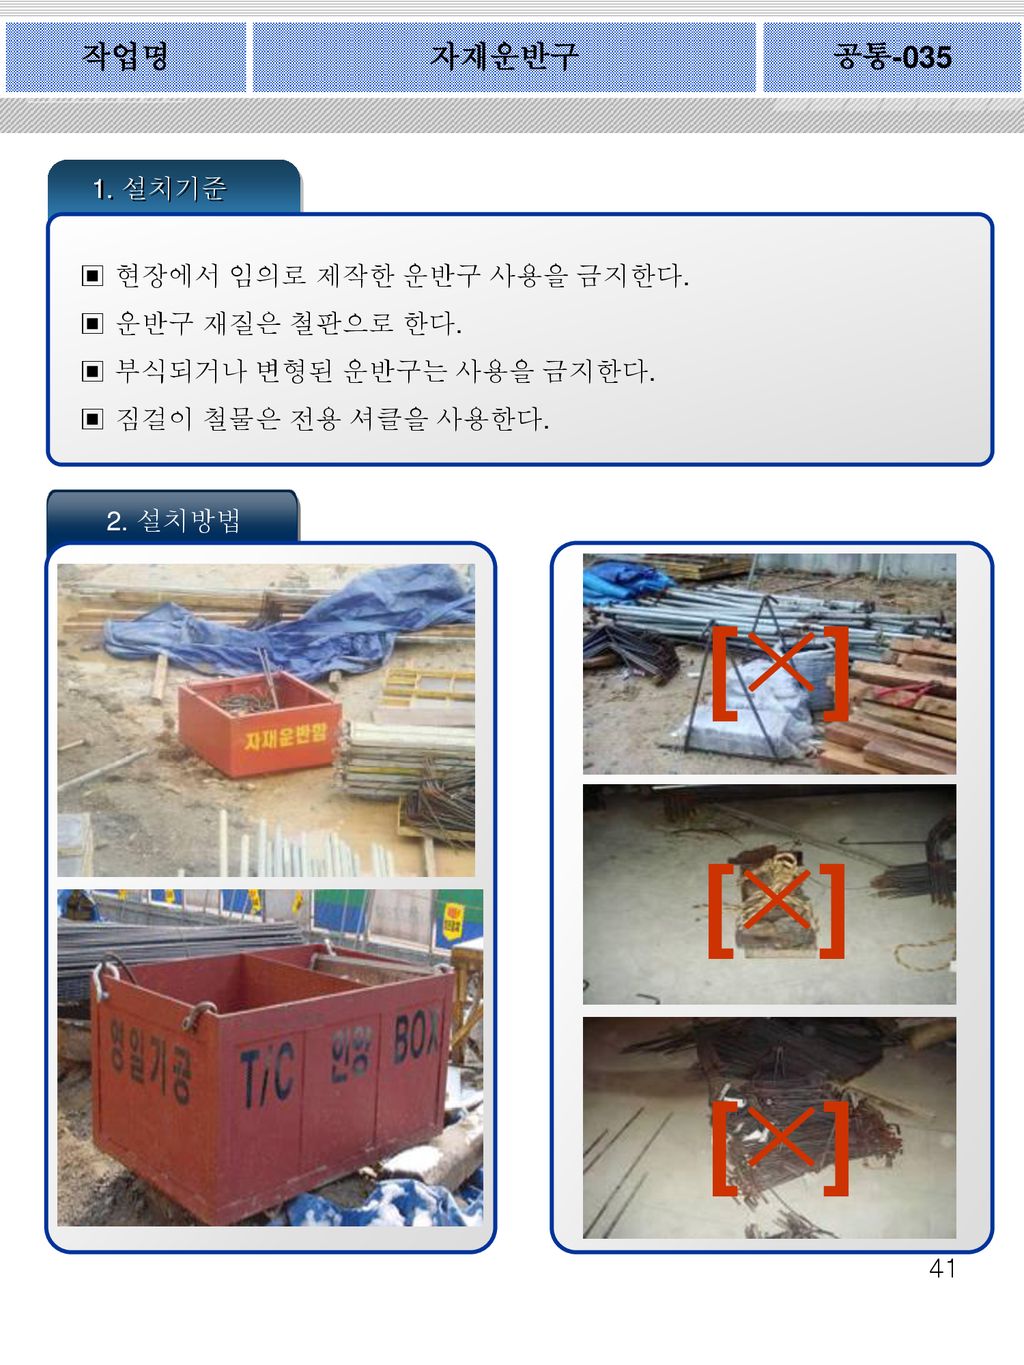 [×] [×] [×] 작업명 자재운반구 공통 설치기준 현장에서 임의로 제작한 운반구 사용을 금지한다.